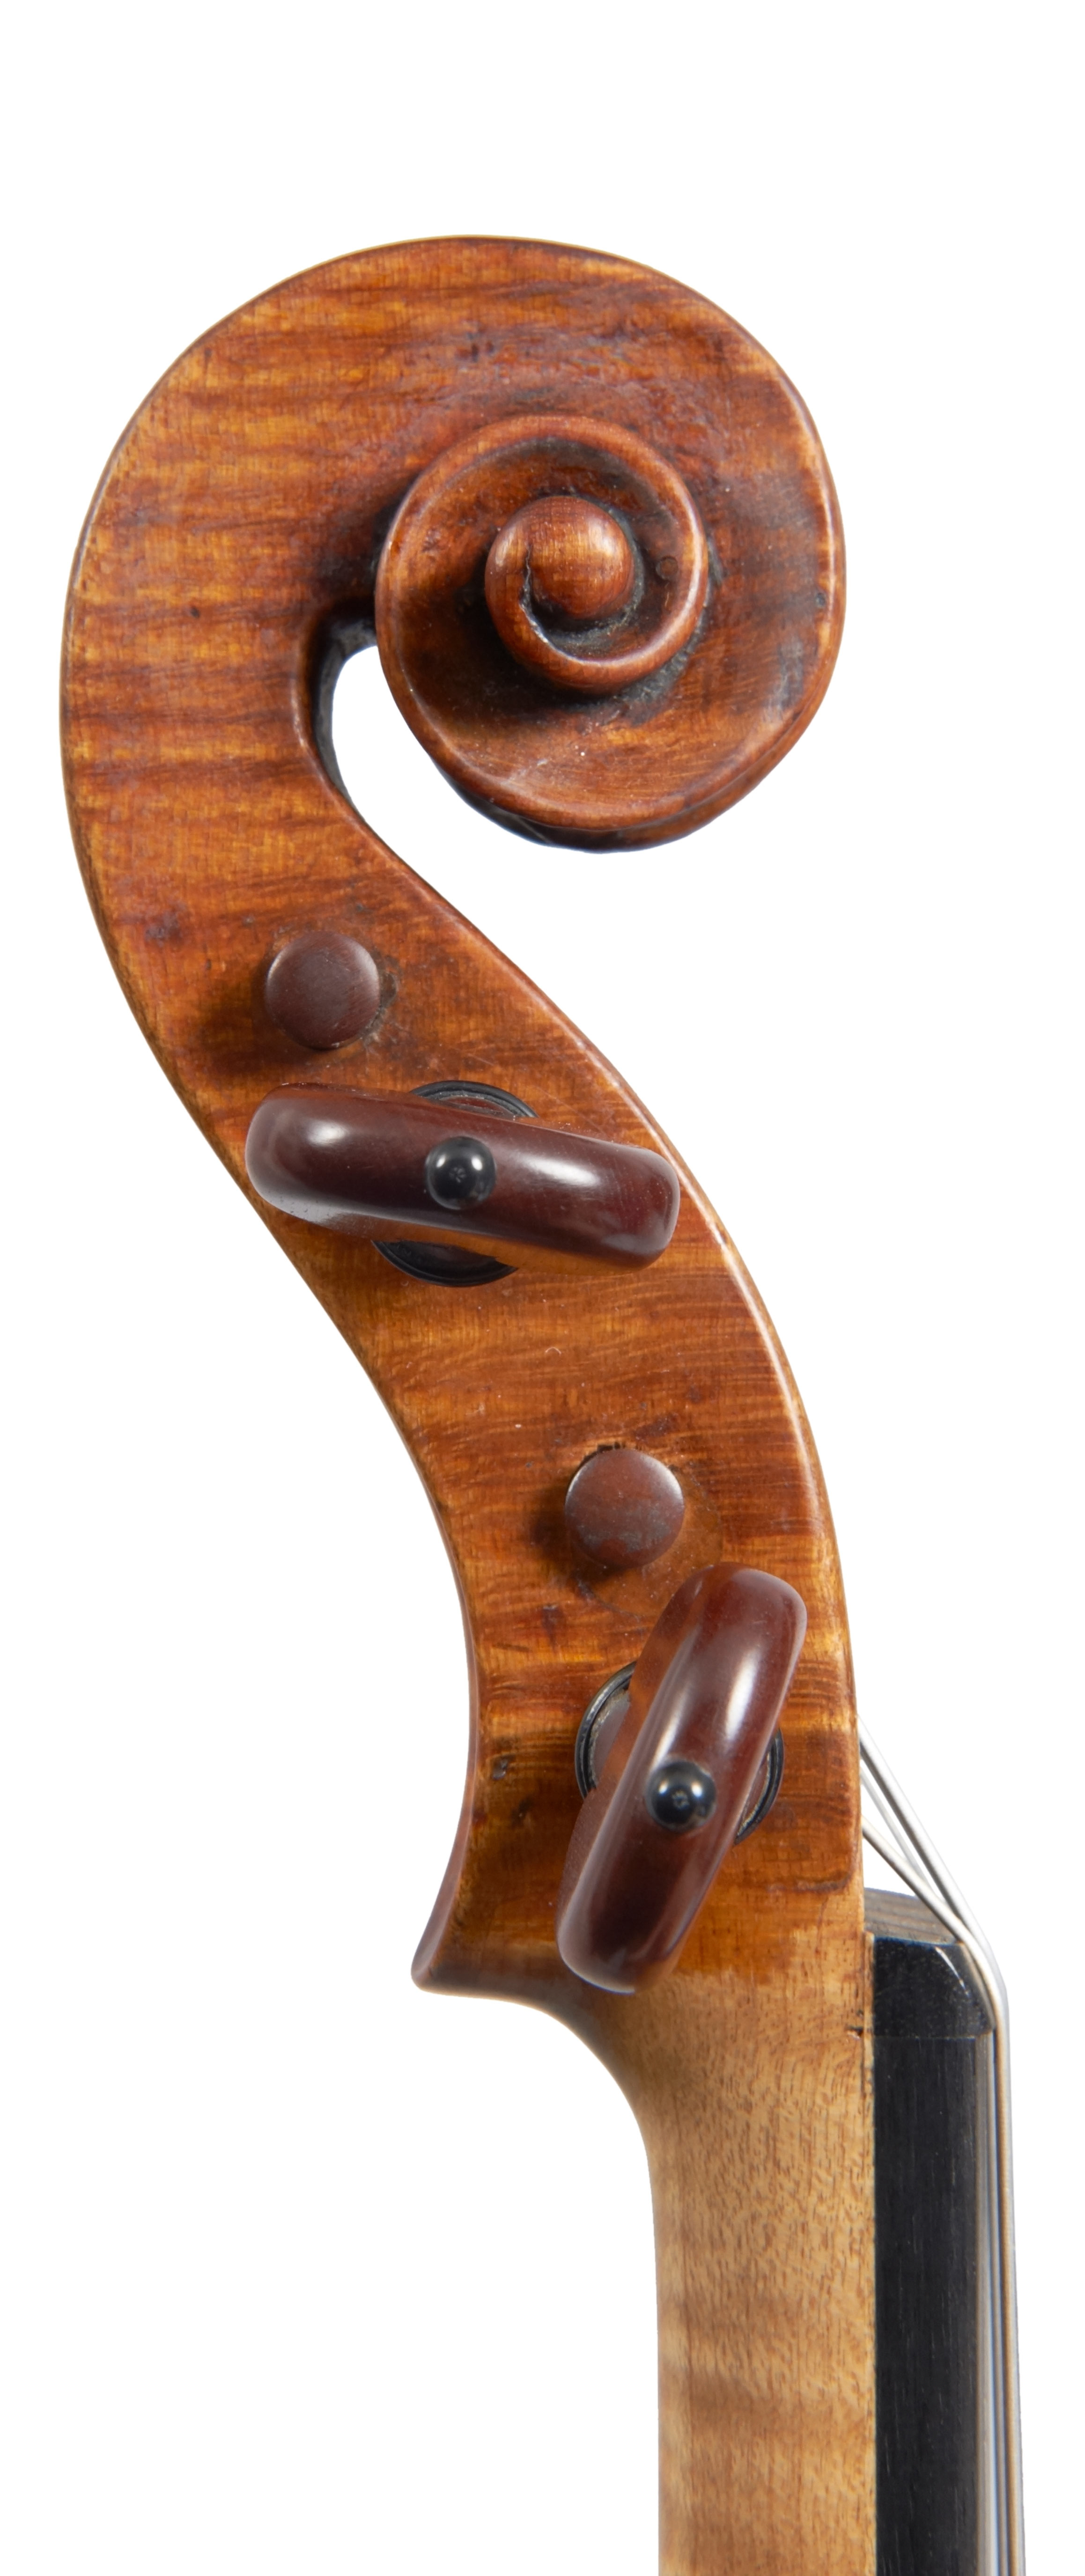 A violin by Carlo Antonio Testore | Four Centuries Gallery 